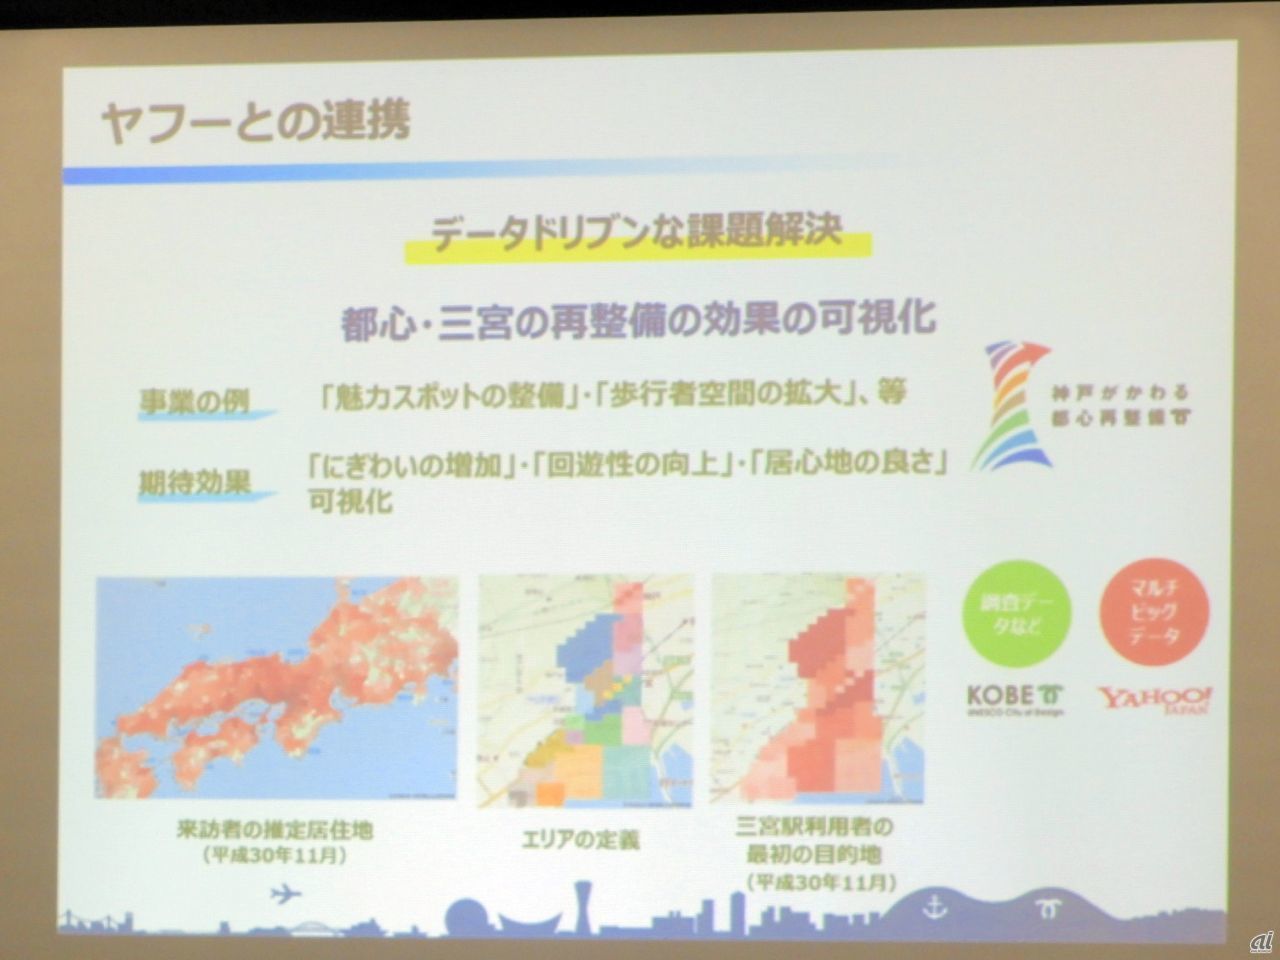 神戸市はオープンデータの取り組みに力を入れ、ヤフーと提携した職員教育や人材育成を行っていることなどが紹介された